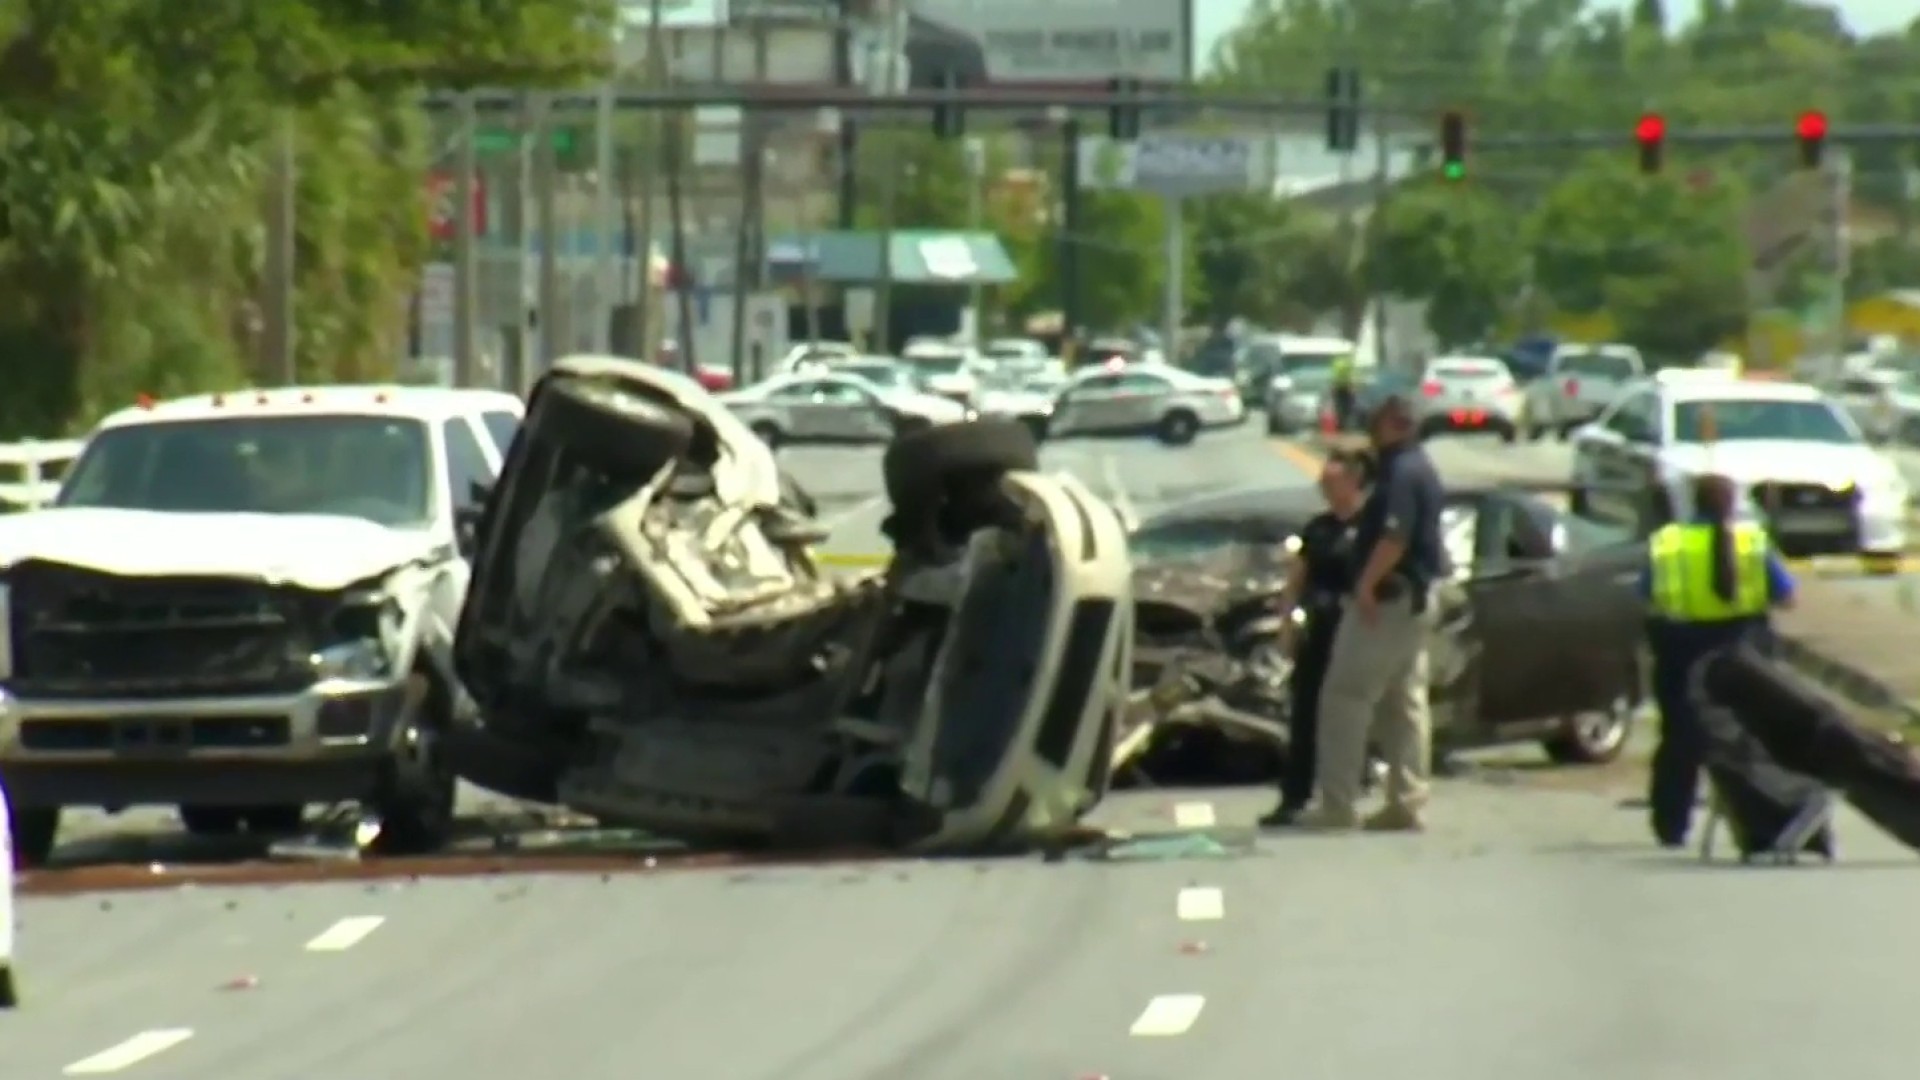 Survivor Of Lee Road Crash That Killed 2 Recounts Tragic Incident